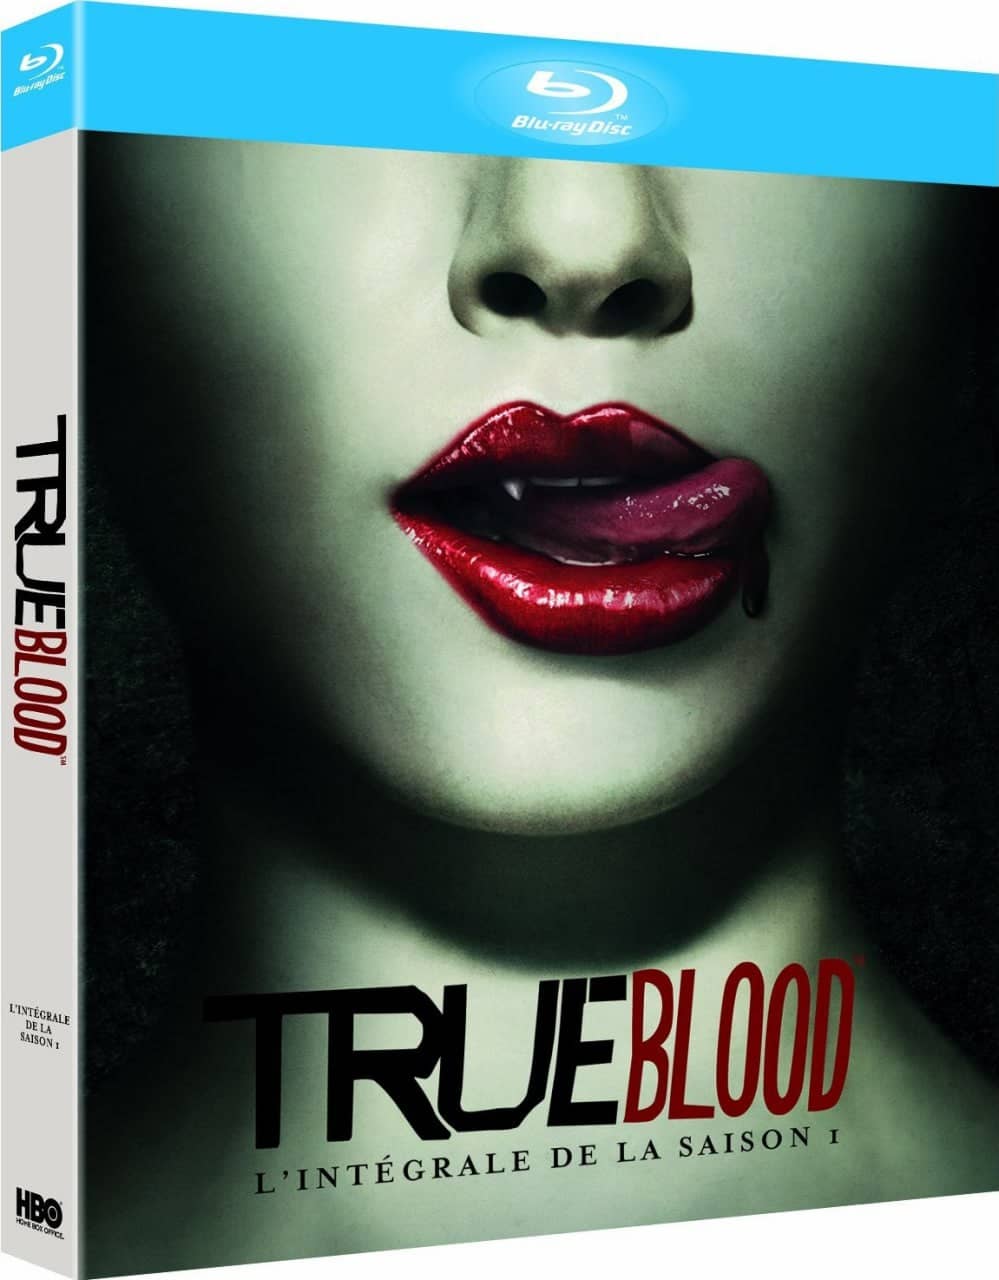 【在线免和谐】真爱如血 第一季 True Blood Season 1 (2008)